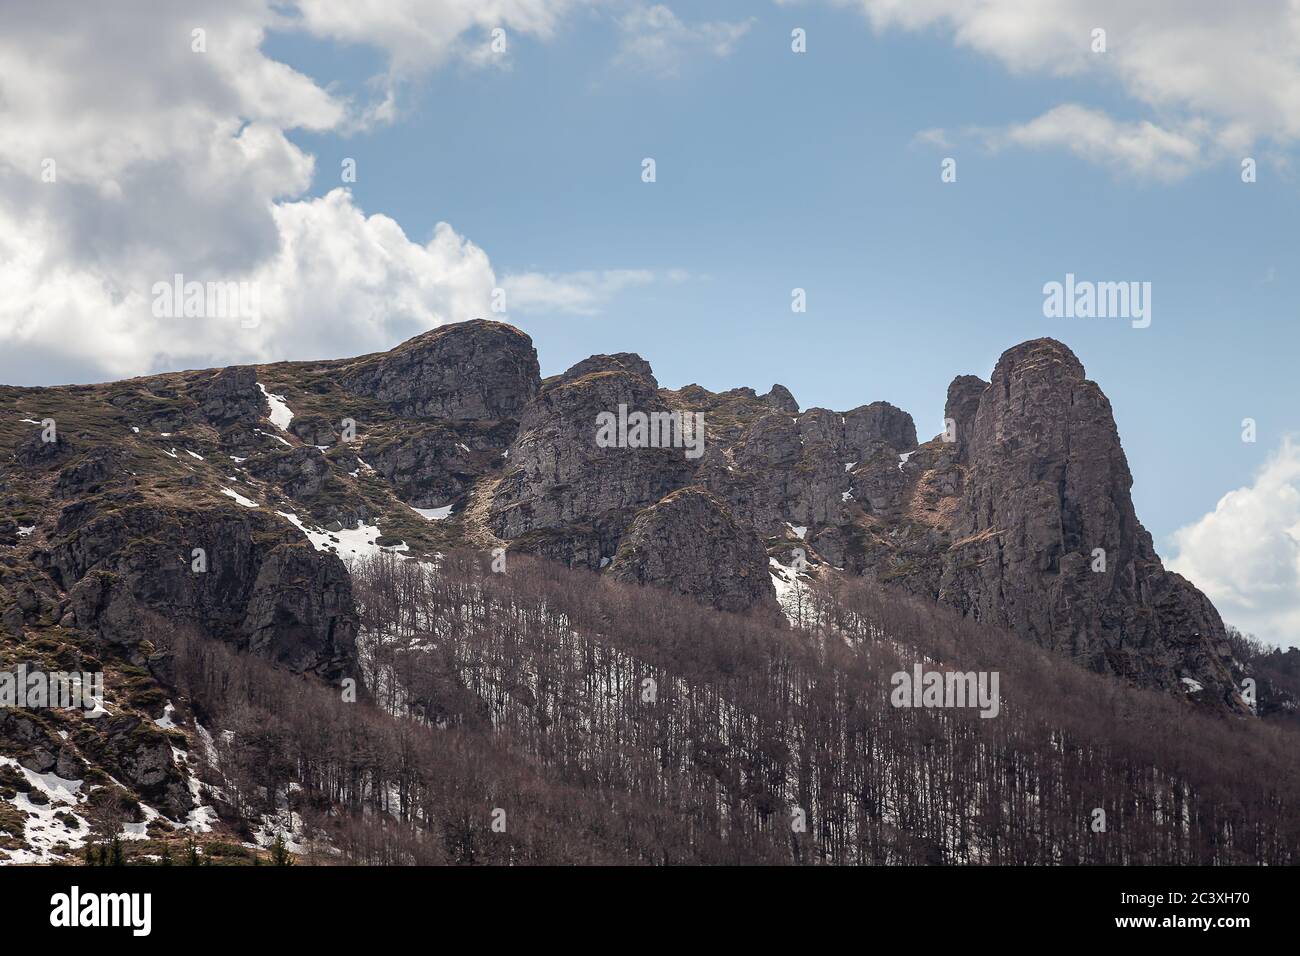 Impressionanti, puntinose, colonne rocciose di montagna, alberi senza foglie, neve rimanente sul terreno e cielo blu con nuvole bianche Foto Stock